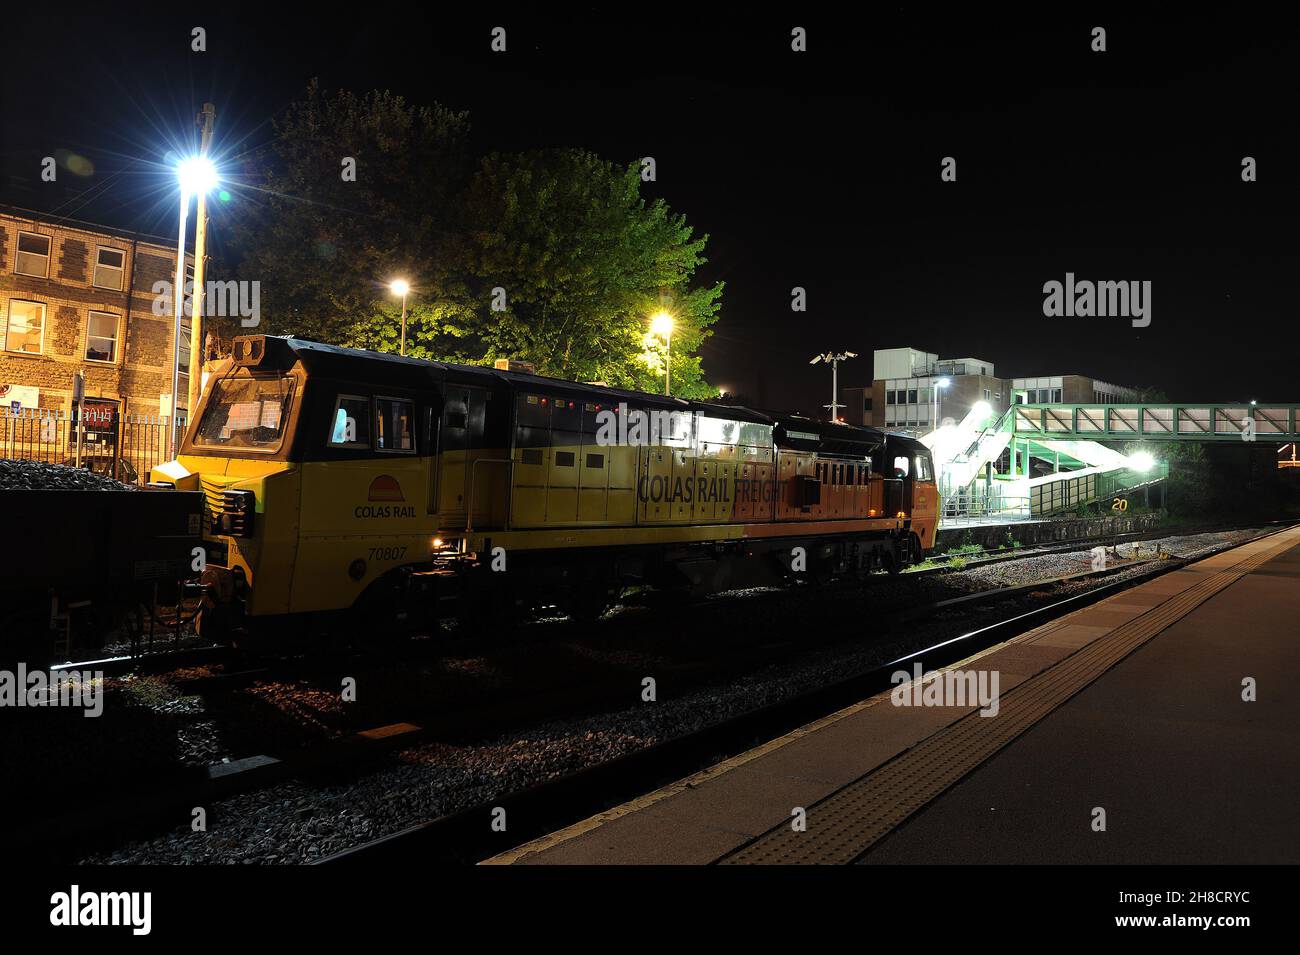 '70807' am Bahnhof Porth mit einem Ballastzug von Hinksey Sidings (Train ID '645 S'). '70802' befindet sich am Heck des Zuges. Stockfoto